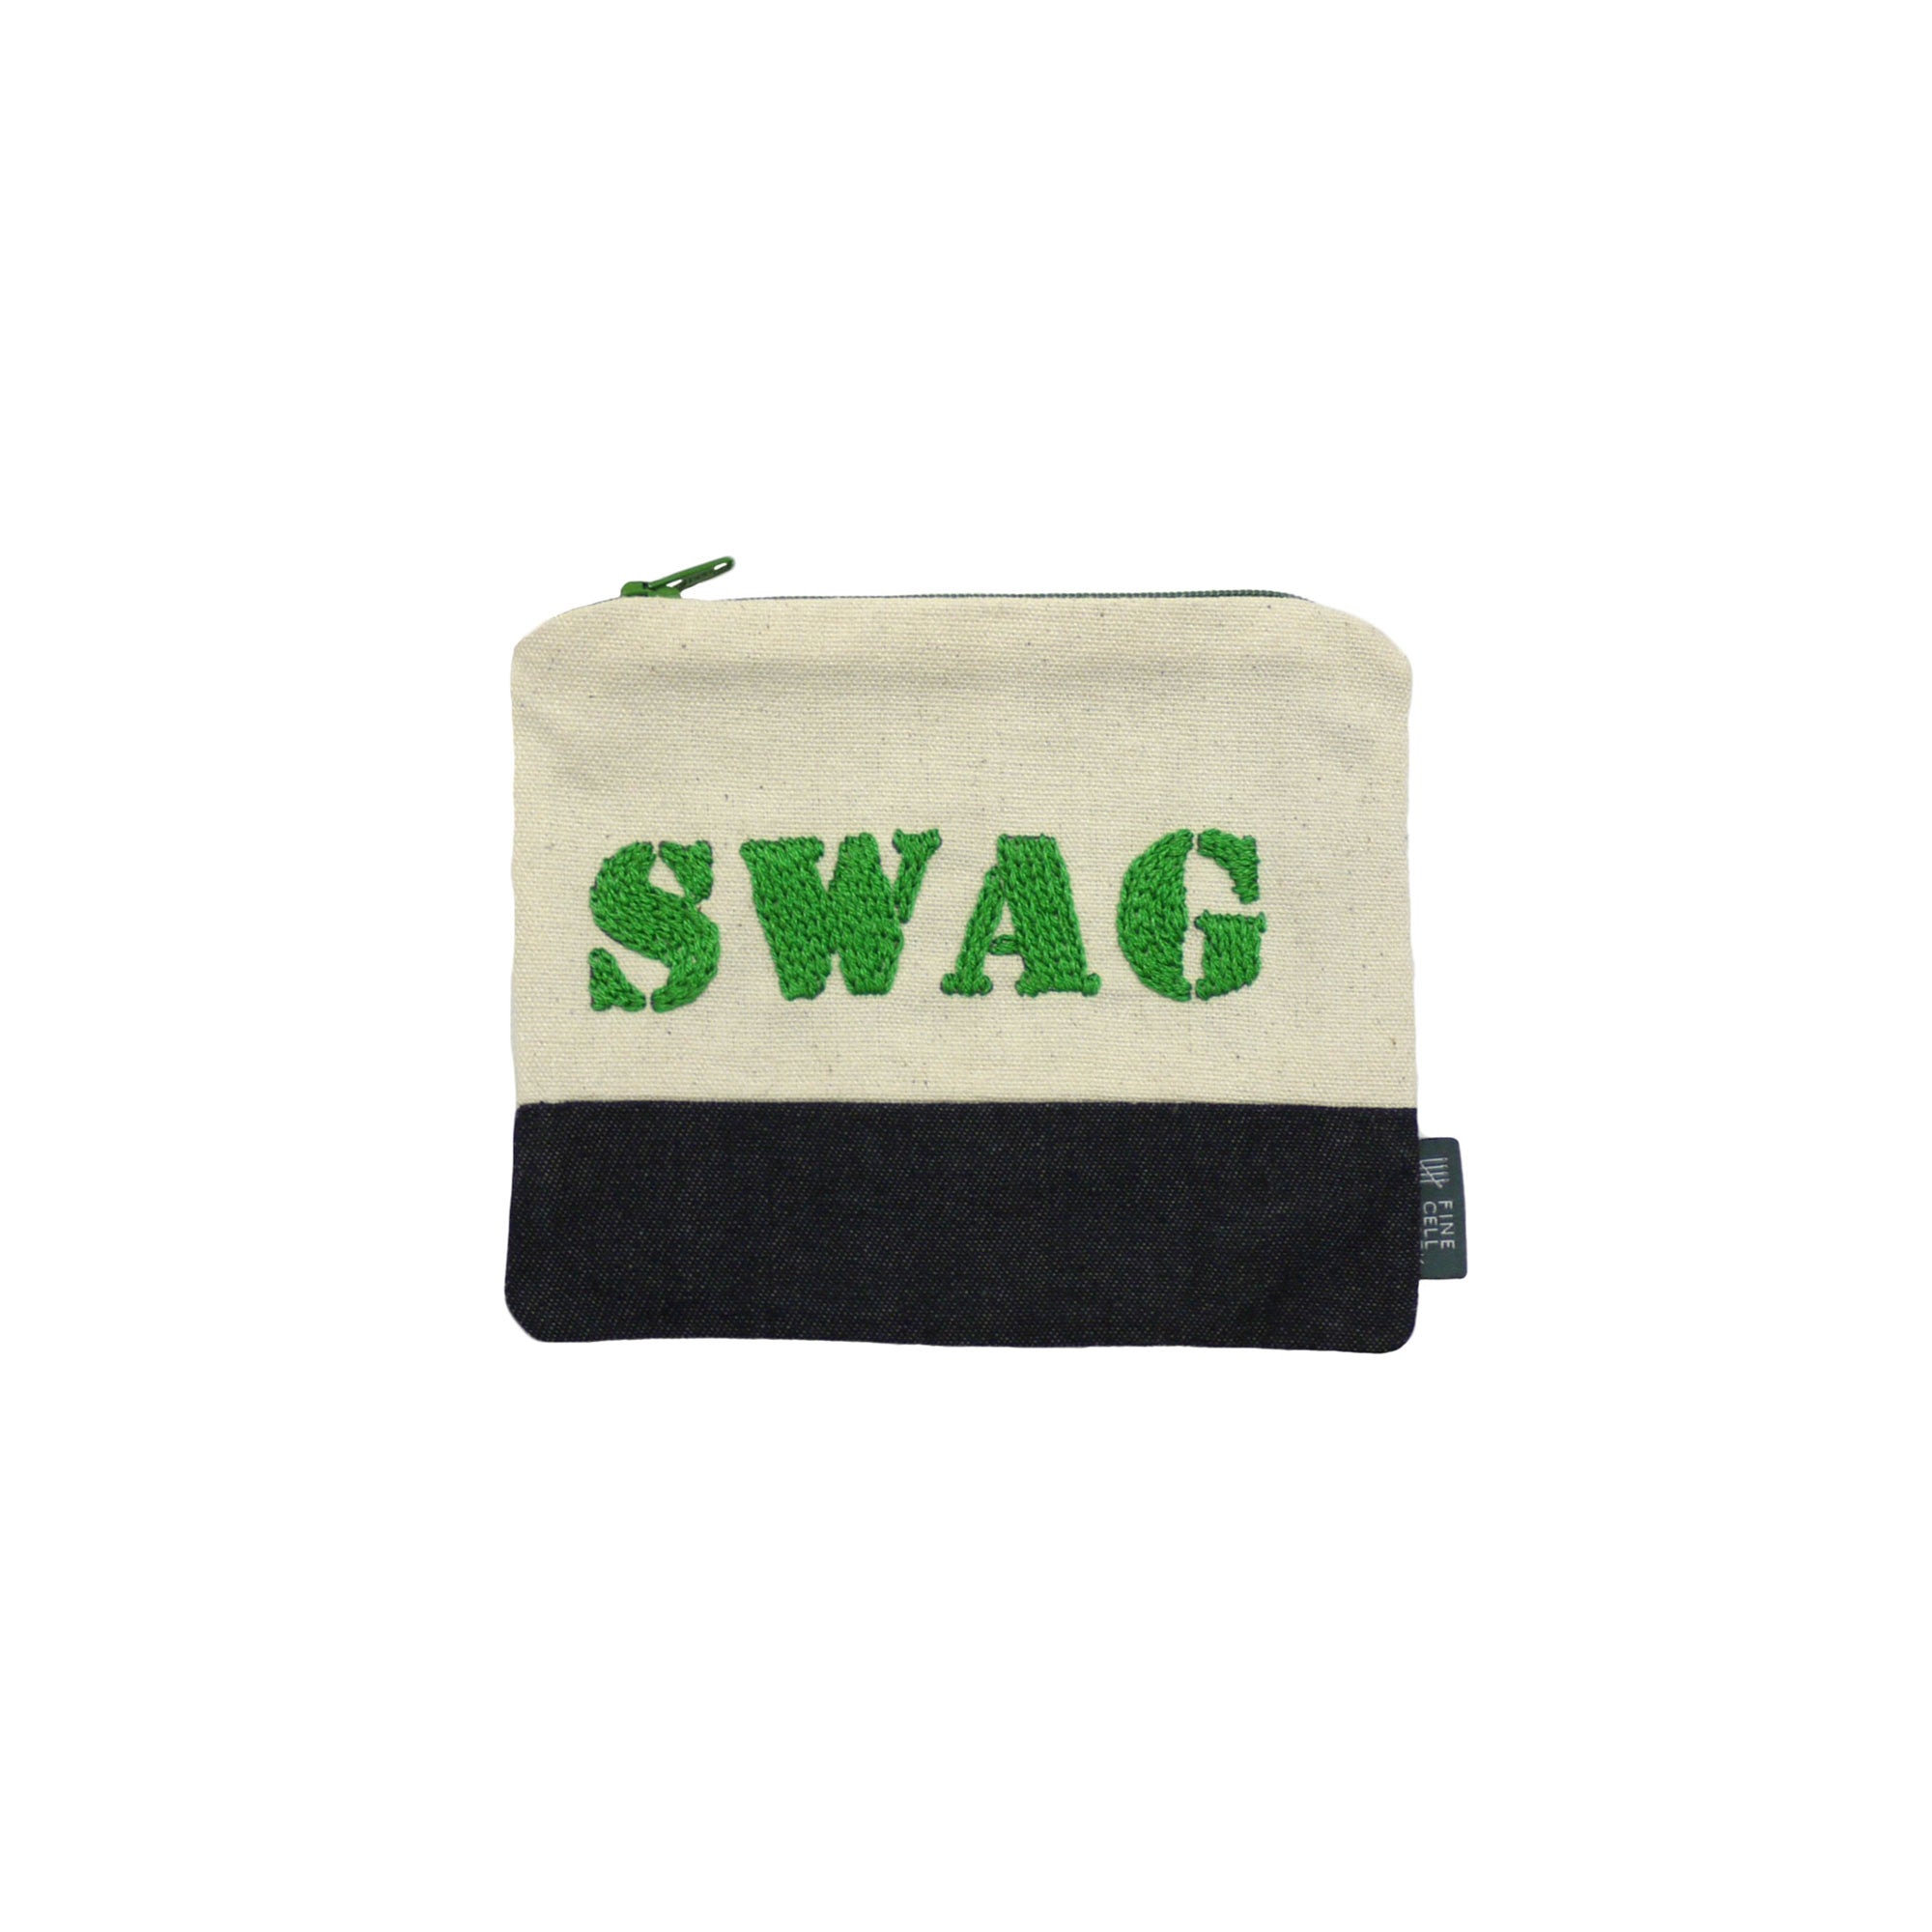 NS018-G-green-swag-purse.jpg